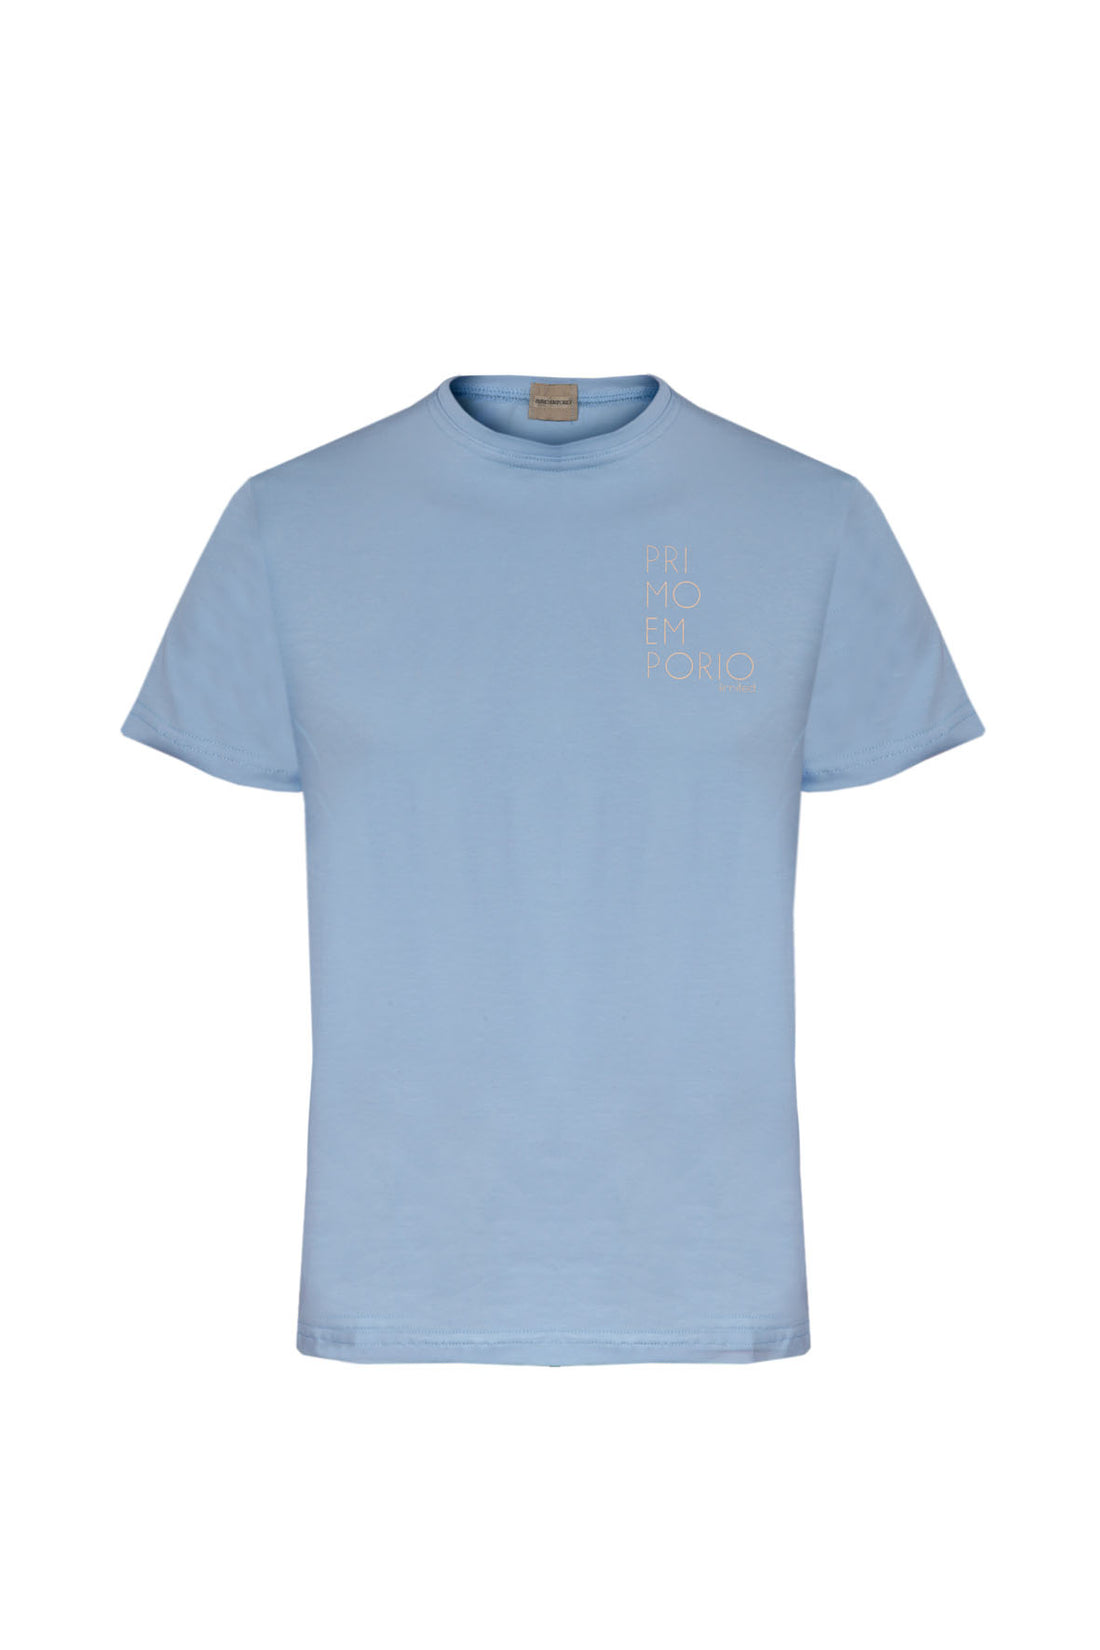 T-Shirt Elastica con Stampa Petto Primo Emporio - Celeste